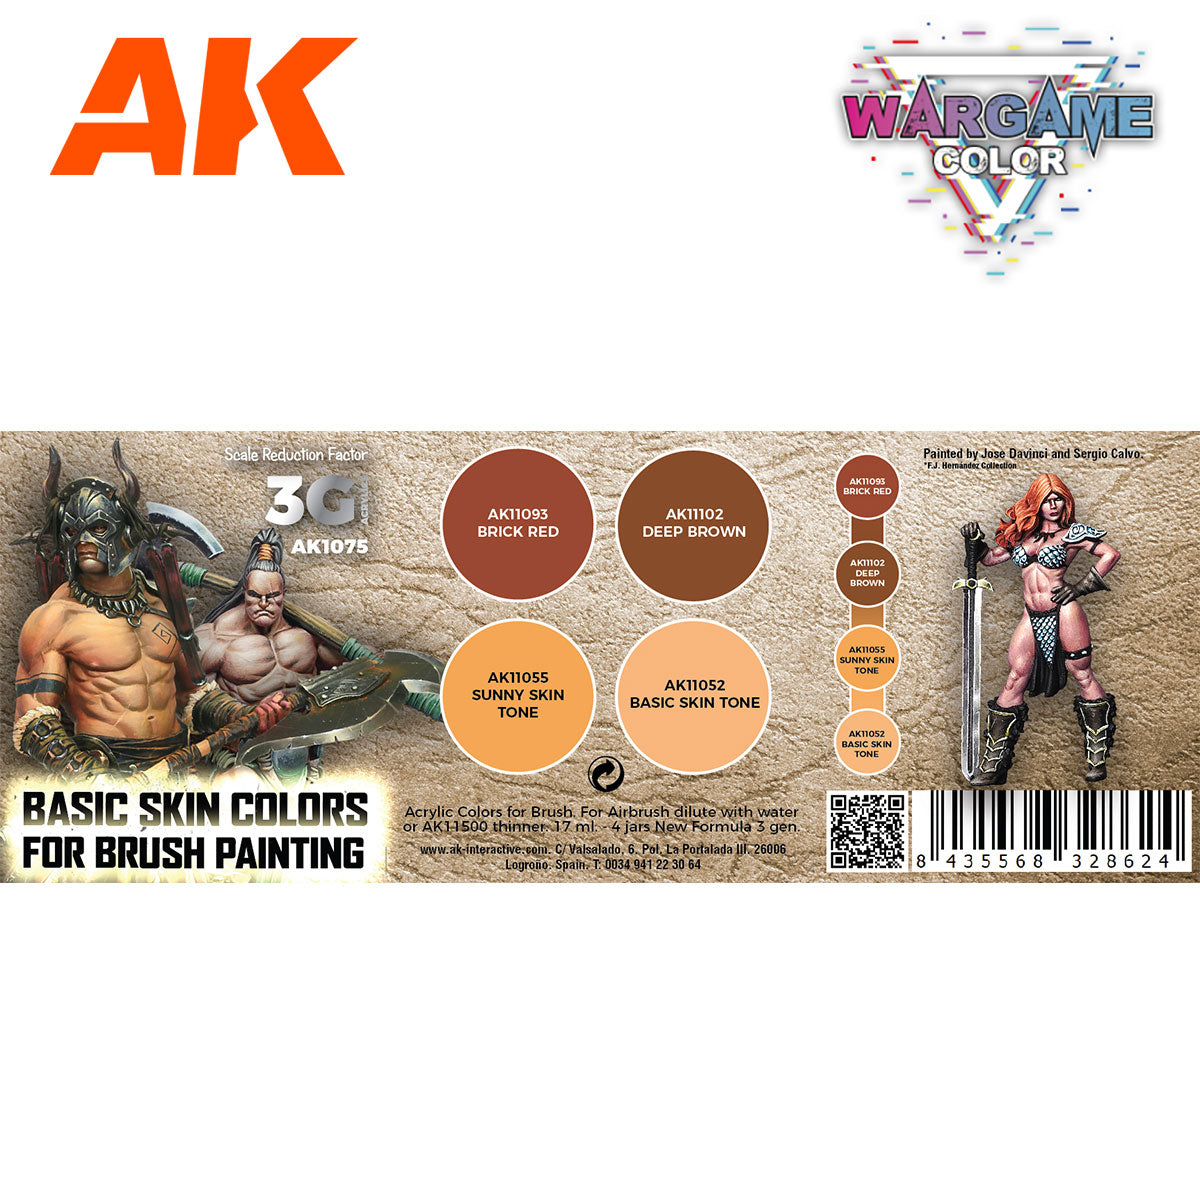 AK Wargame & Fantasy Paint Sets